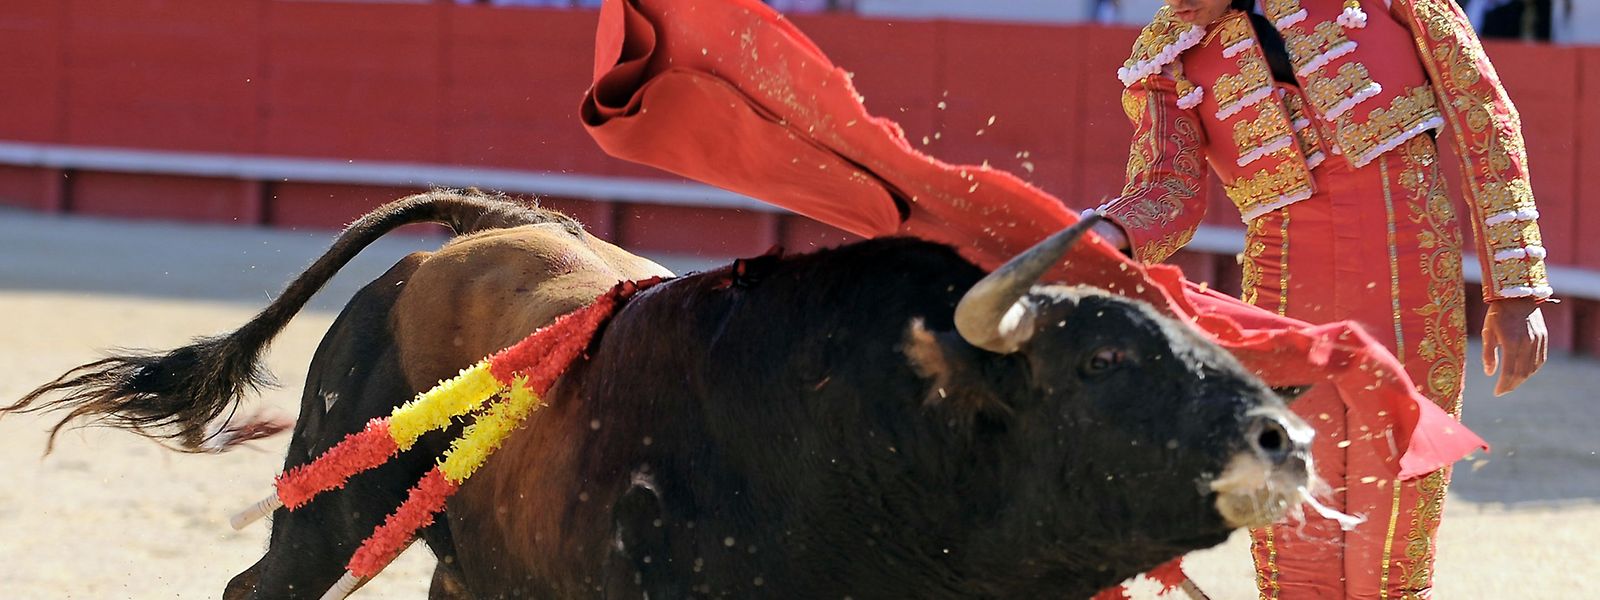 Stierkampf hat in Spanien eine jahrhundertelange Tradition. Auf Mallorca soll es den blutigen Kampf nun nur noch in einer Light-Version geben.